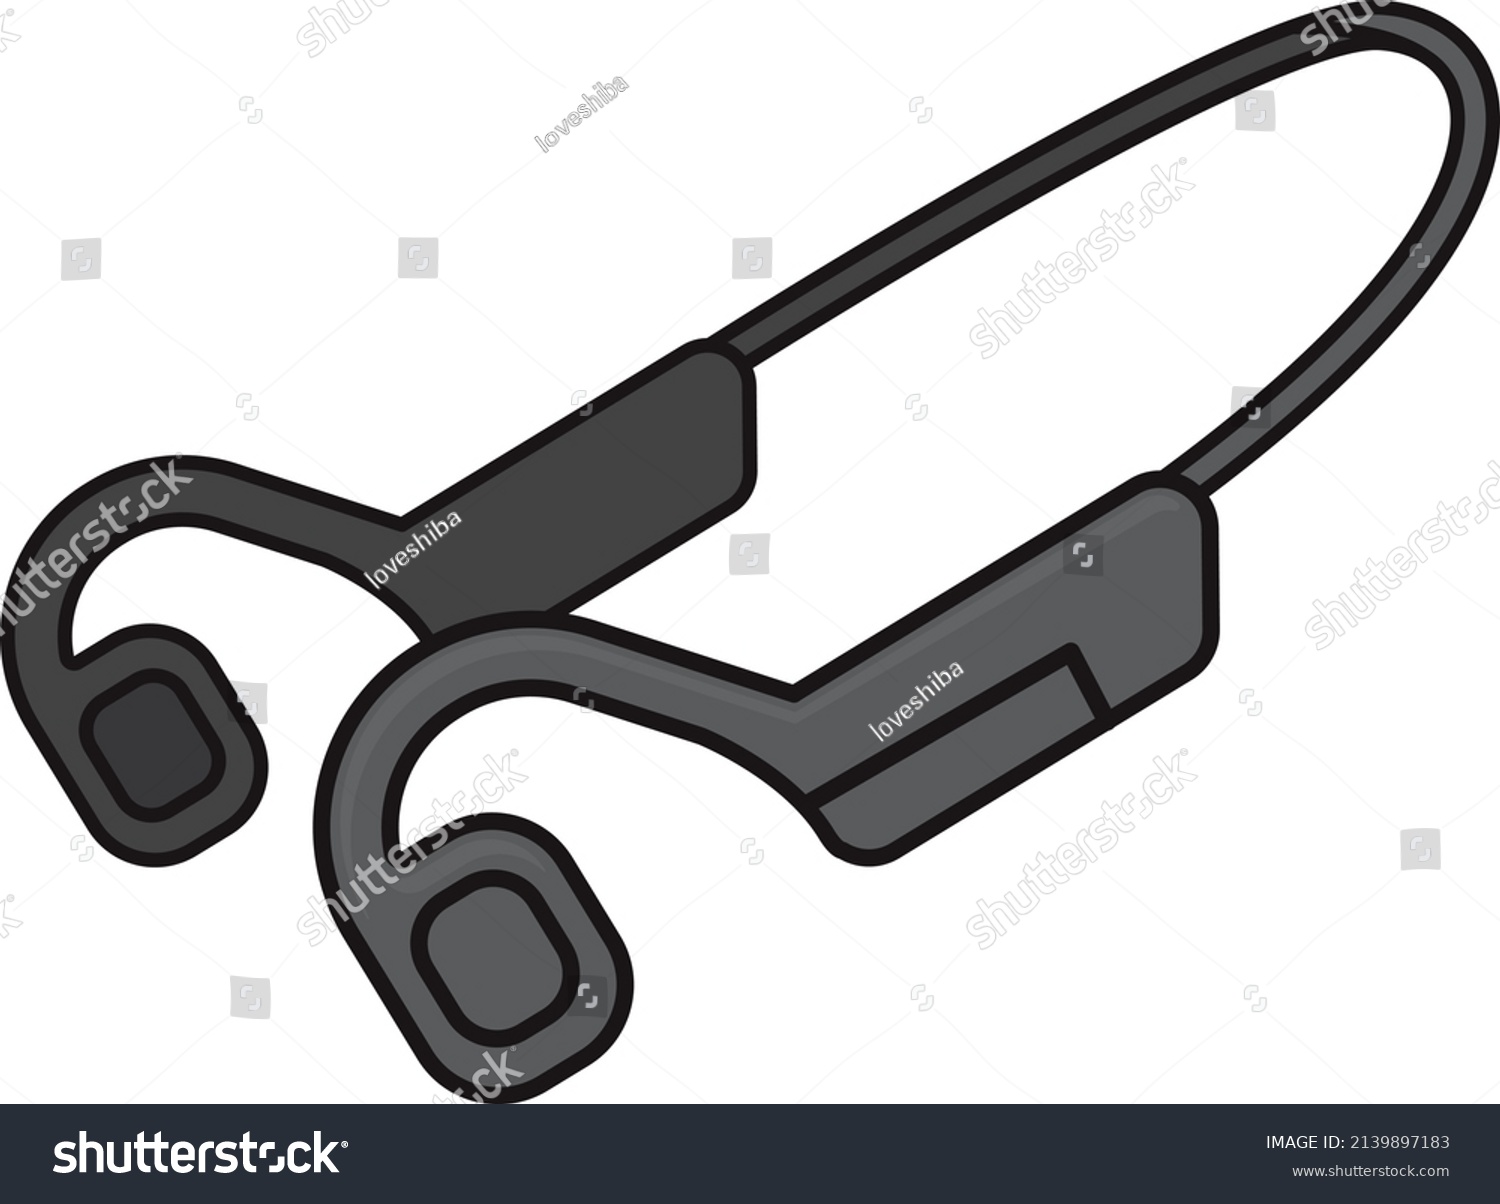 SVG of Illustration of black bone conduction earphones svg